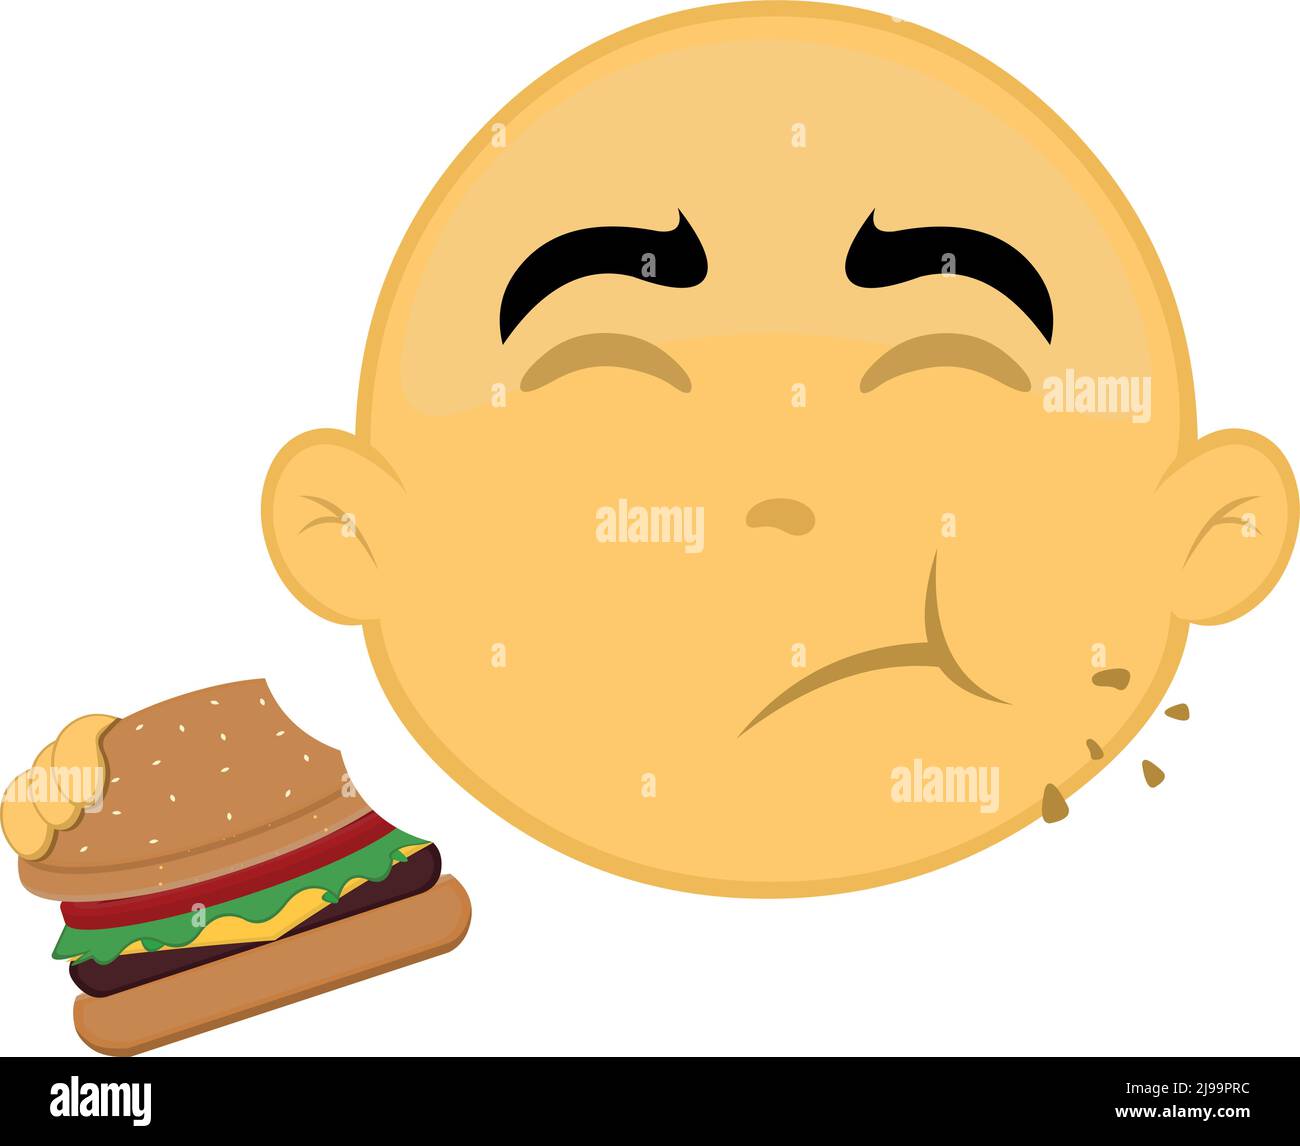 Vektor-Illustration des Gesichts einer gelben und kahlen Zeichentrickfigur, die einen Hamburger isst Stock Vektor